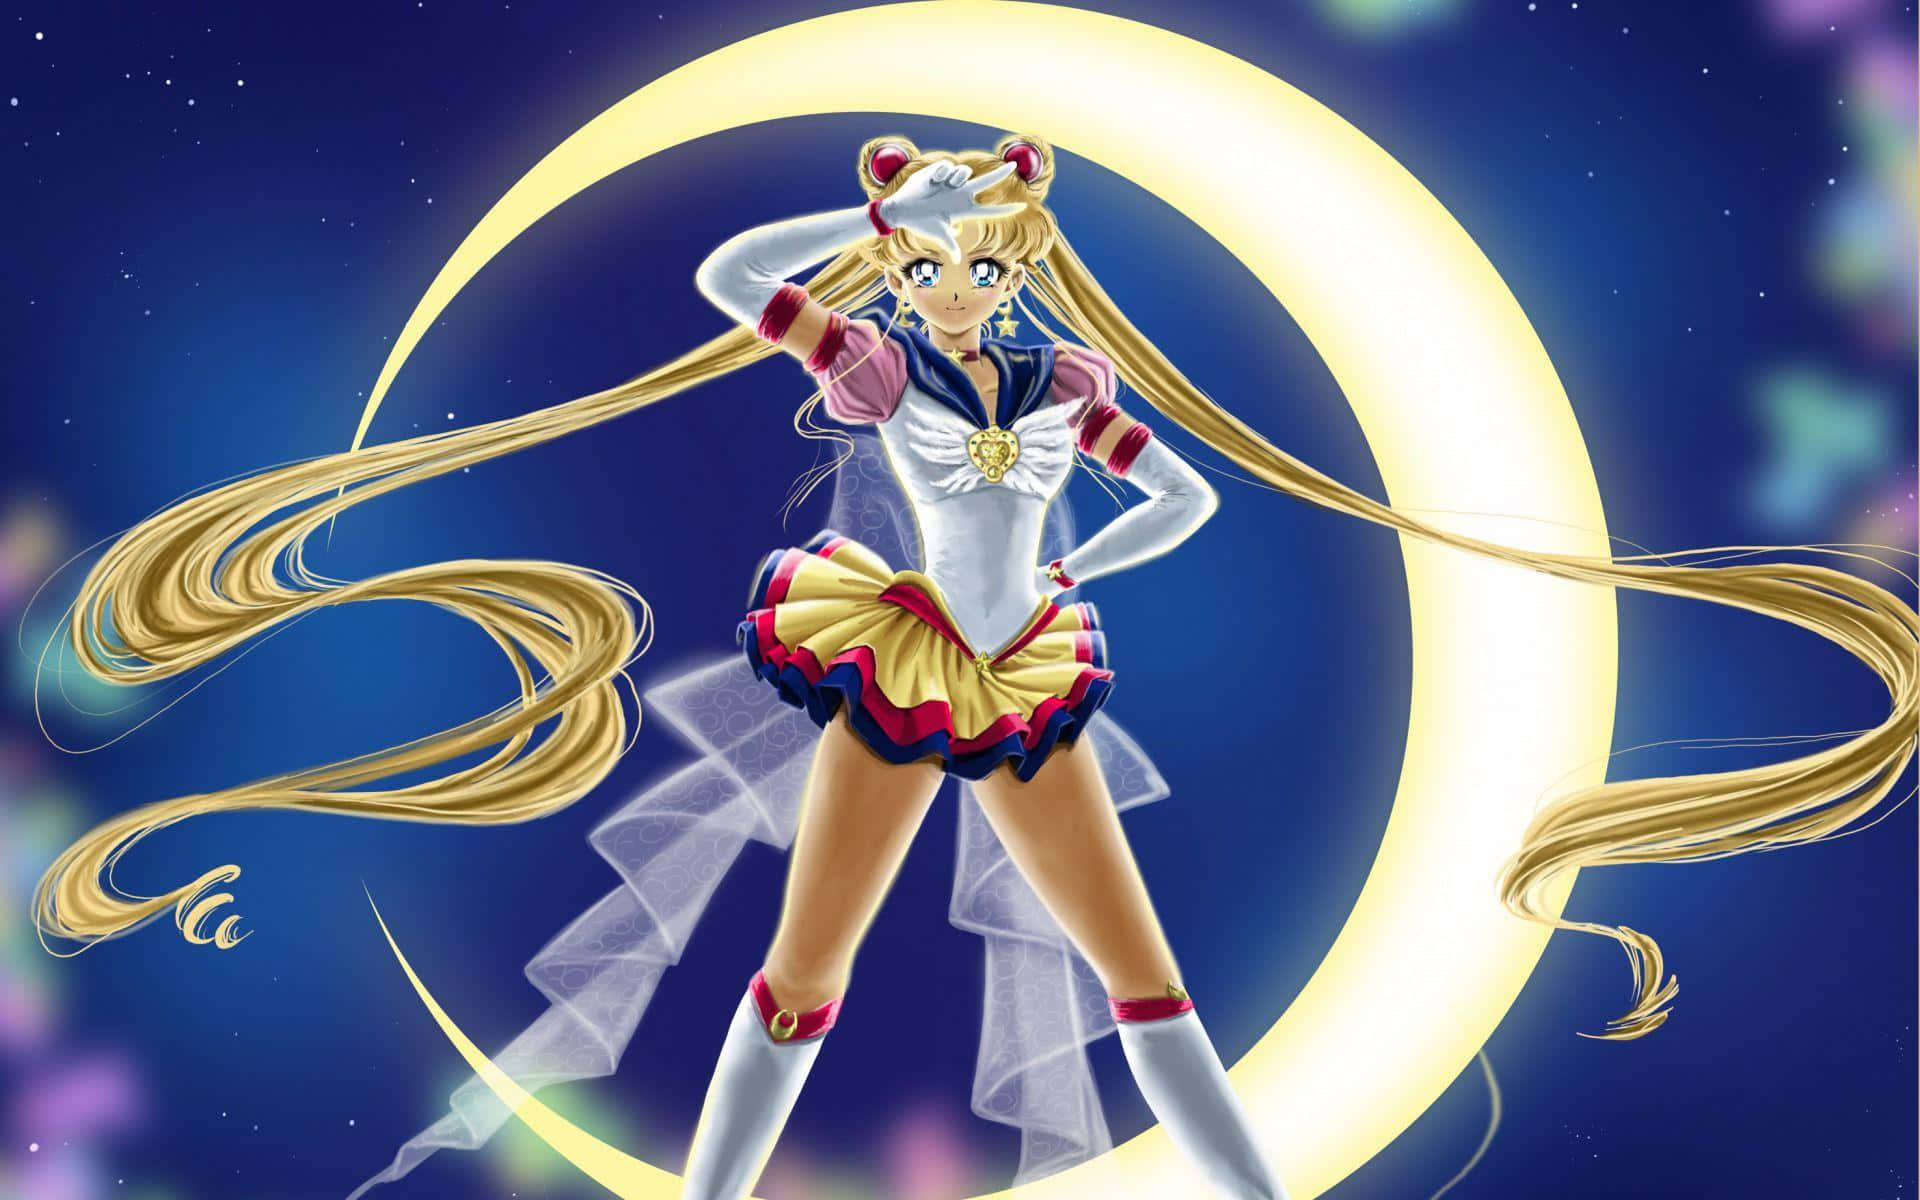 Sailormoon Crystal Assume Poses Para Um Retrato. Papel de Parede